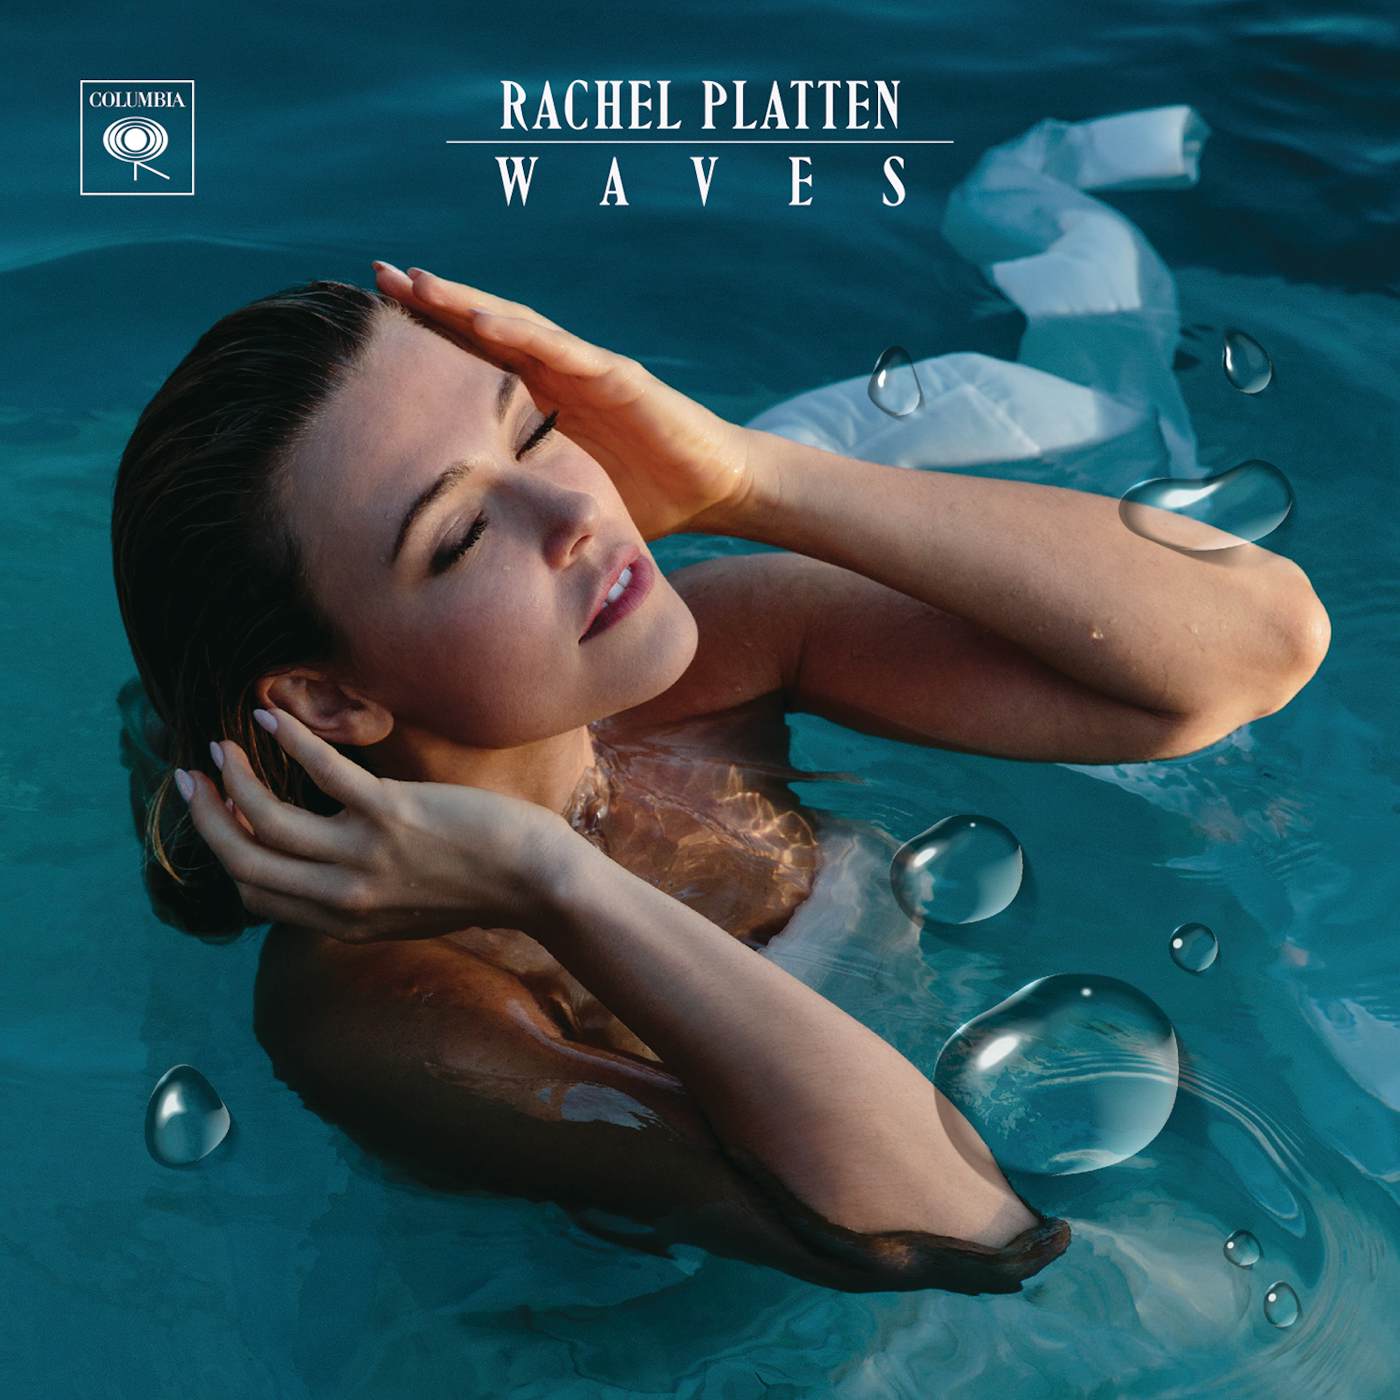 Rachel Platten WAVES CD